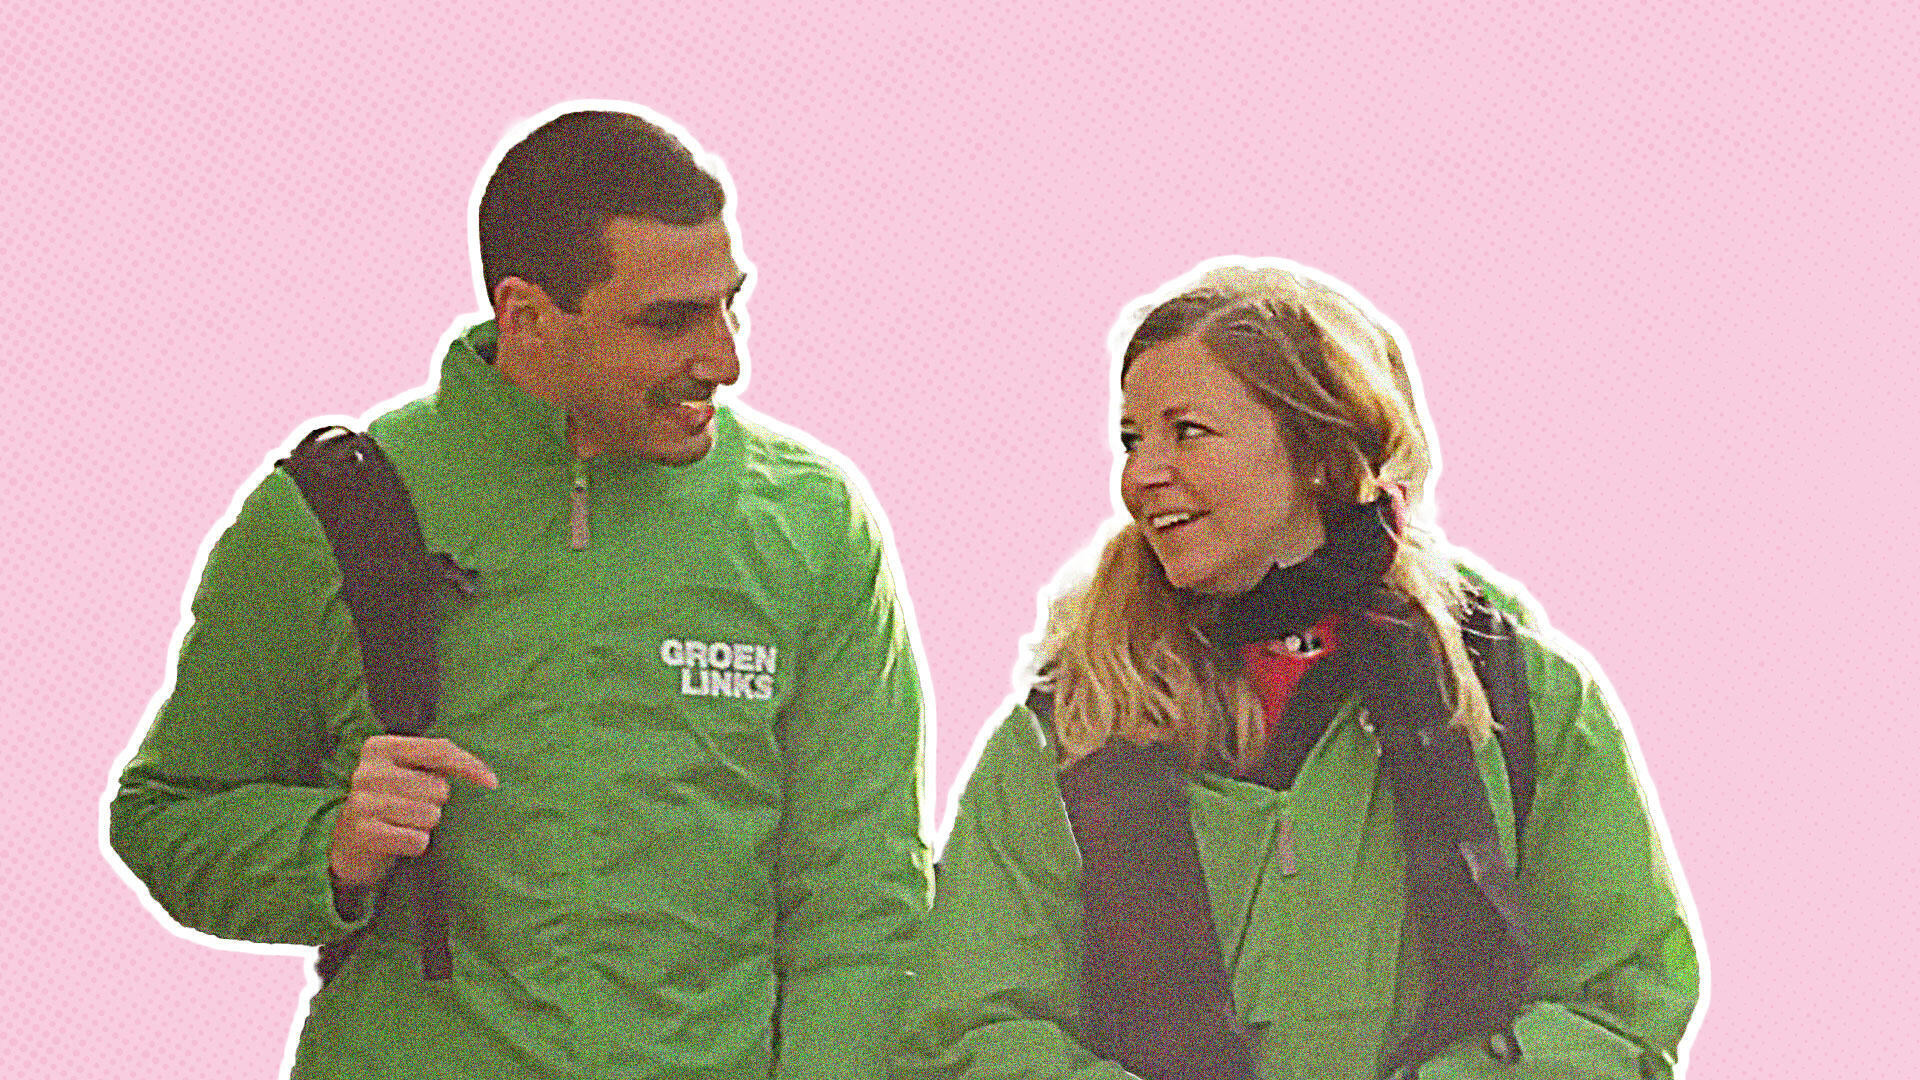 Een uitgeknipte foto van twee pratende vrijwilligers in een groen jasje op een roze achtergrond